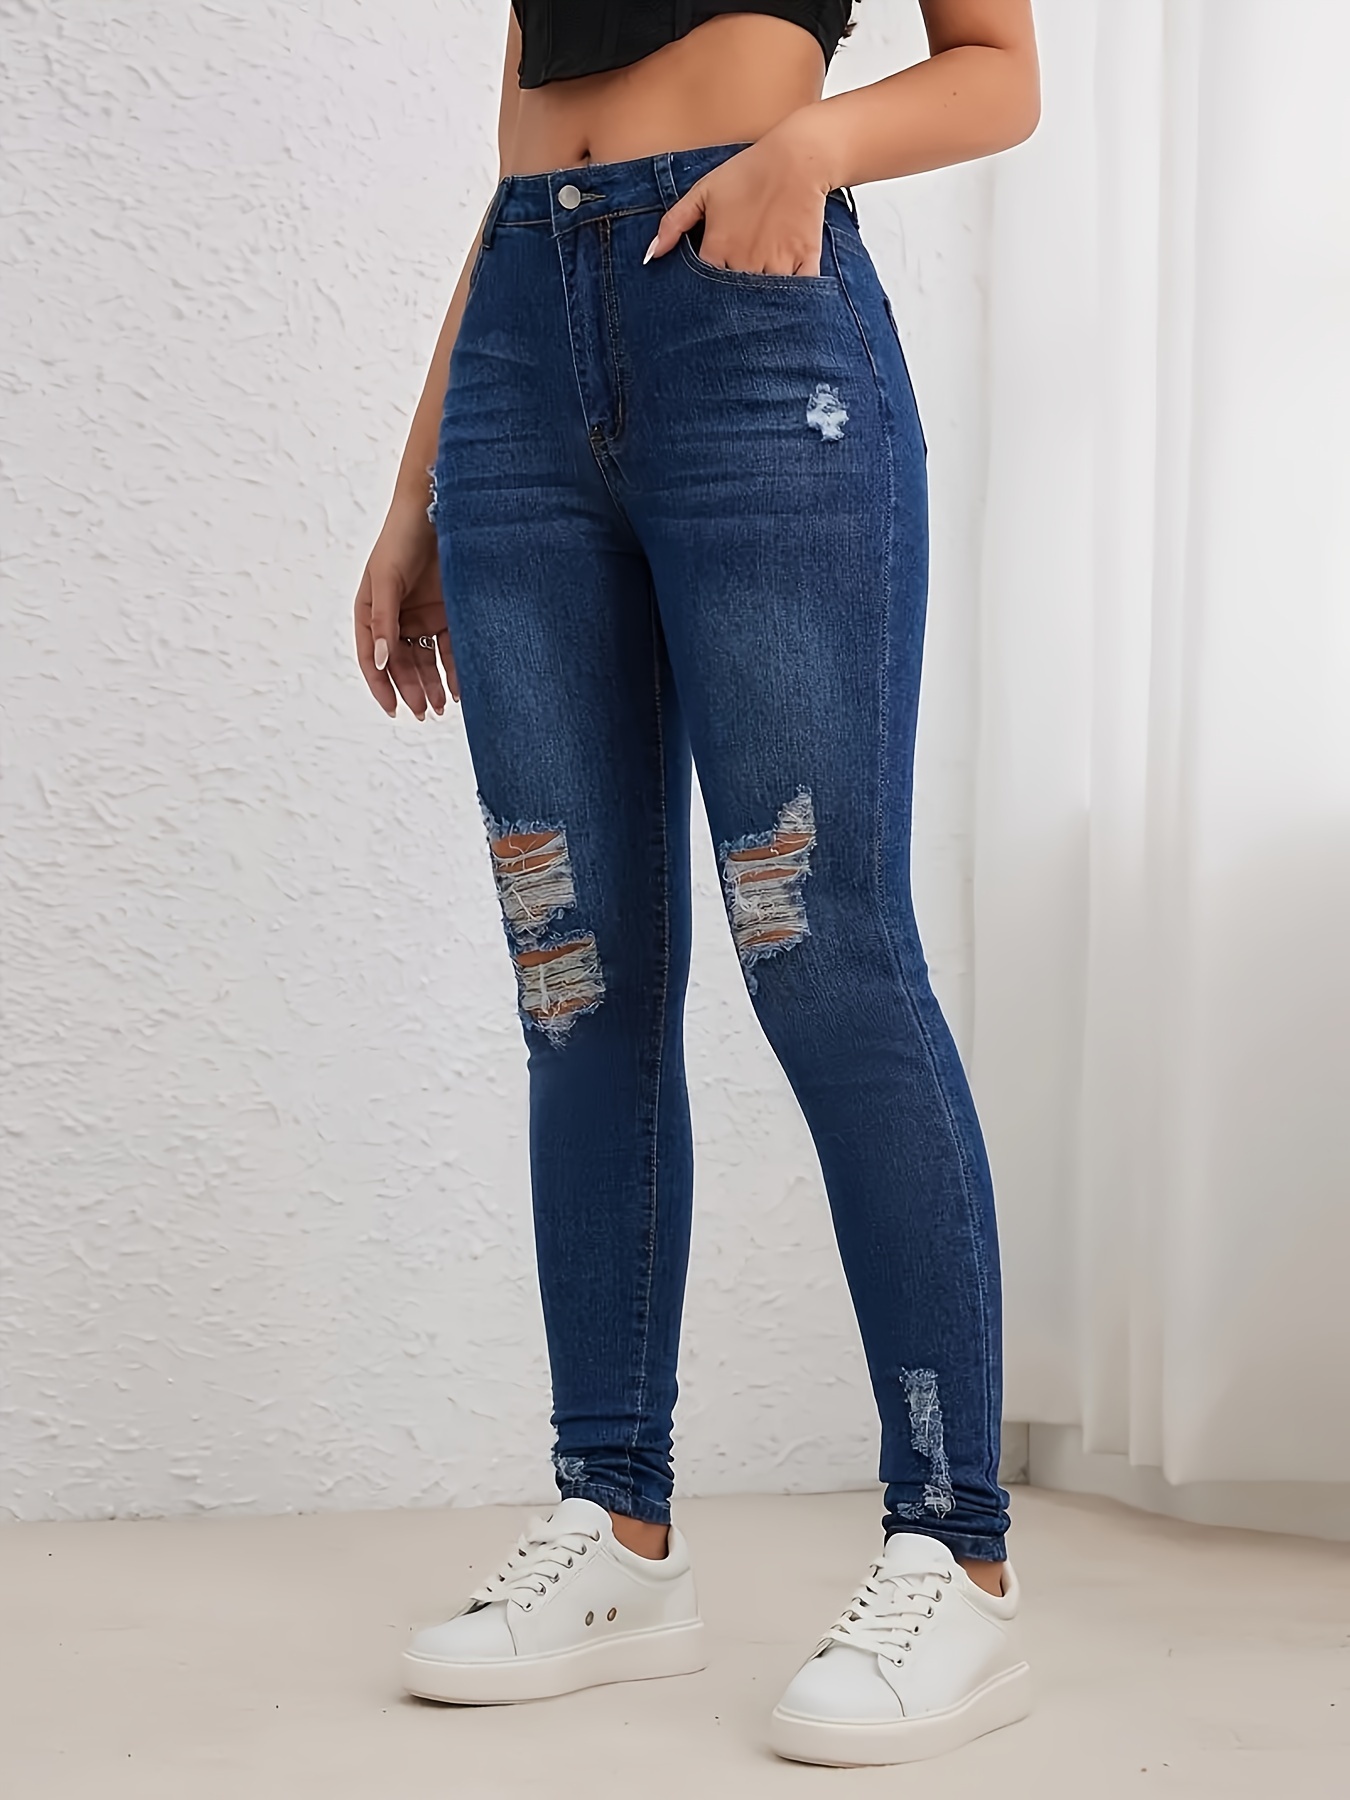 Compra online de Nova moda feminina sexy rasgado cintura alta jeans  apertado calças jeans S-3XL